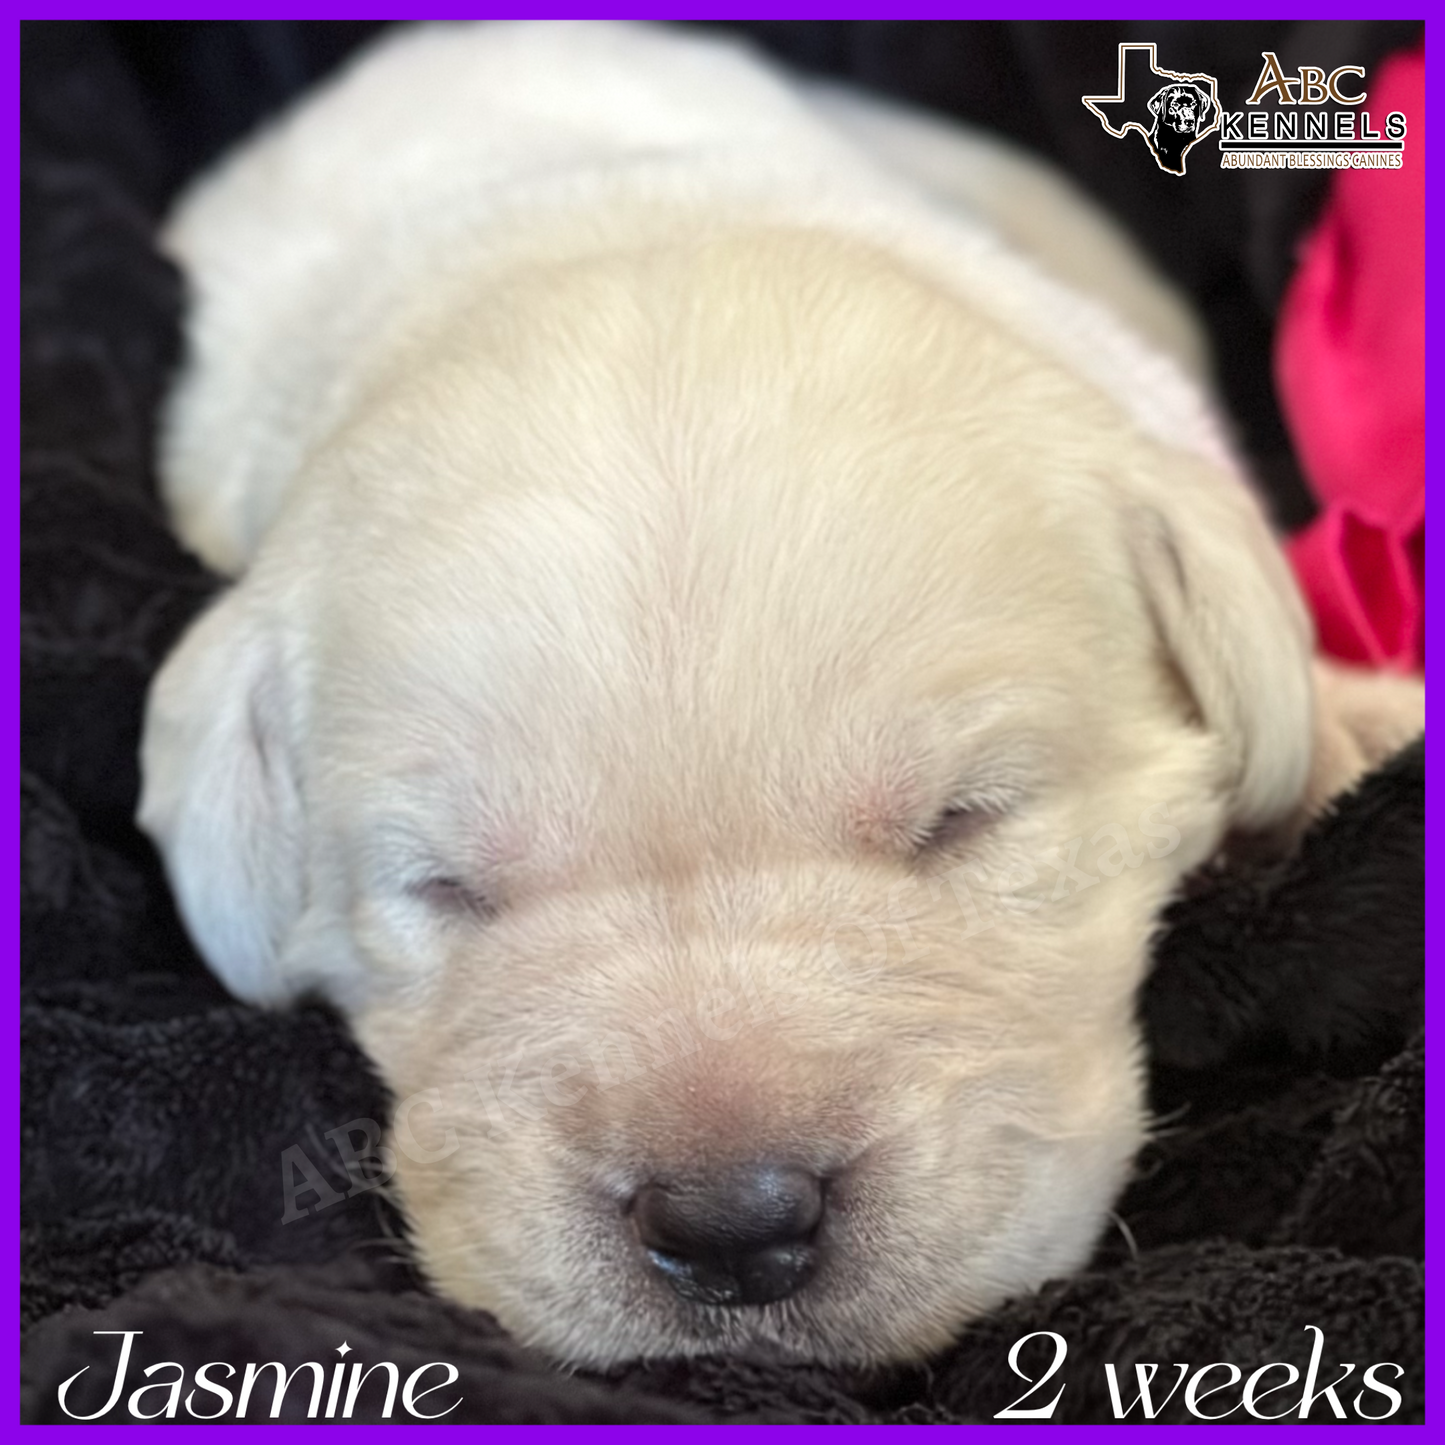  White Lab Puppy Jasmine at 2 weeks old